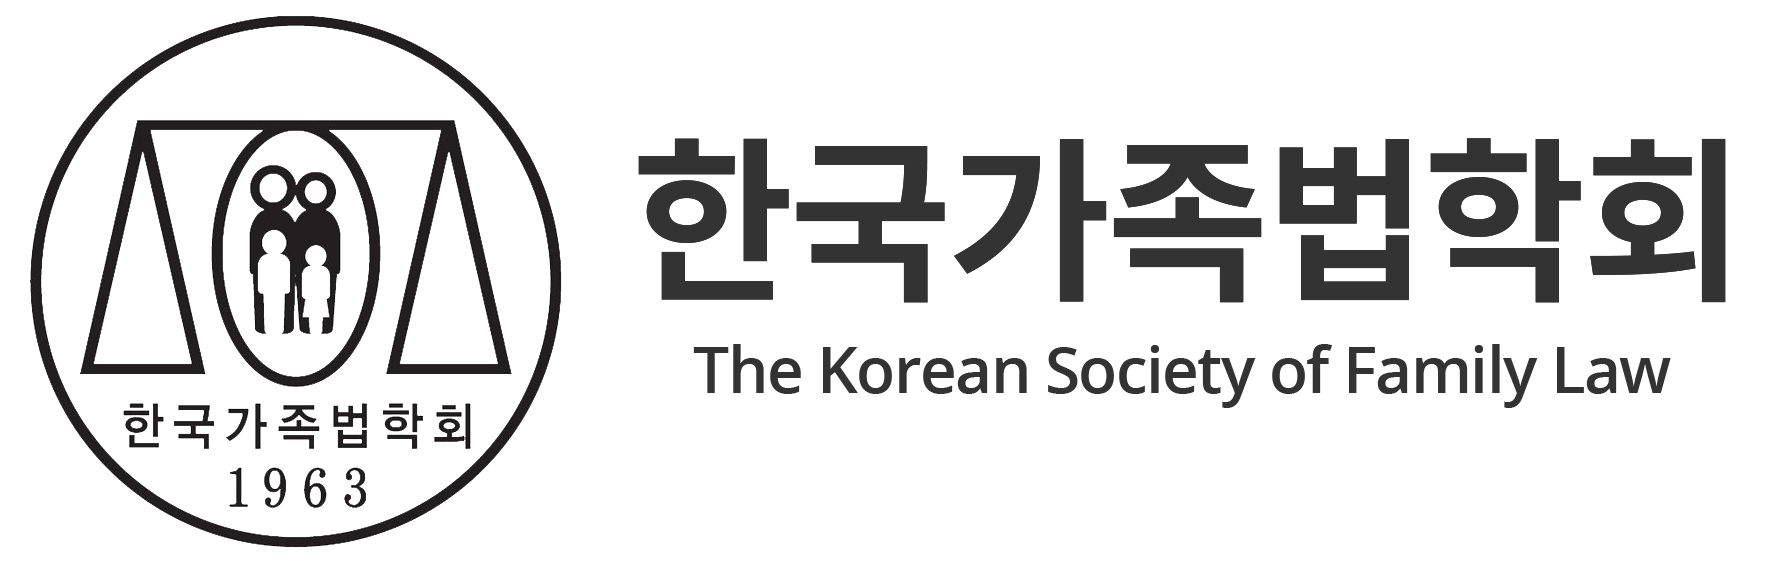 한국가족법학회 로고 이미지